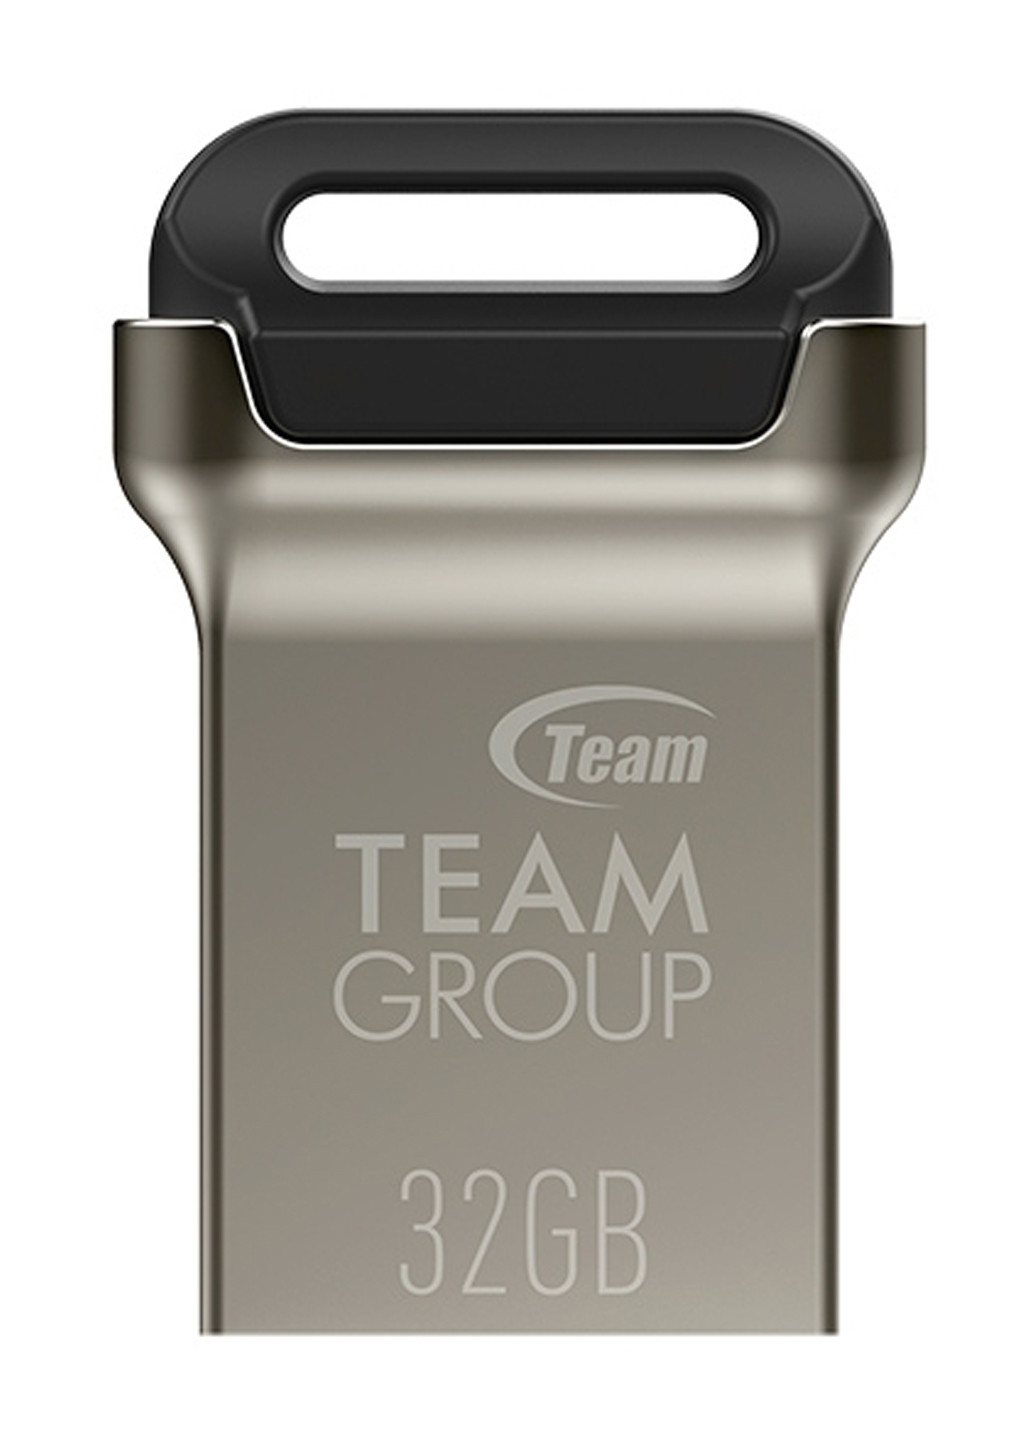 Флеш память USB C162 32GB Metal (TC162332GB01) Team флеш память usb team c162 32gb metal (tc162332gb01) (134201663)